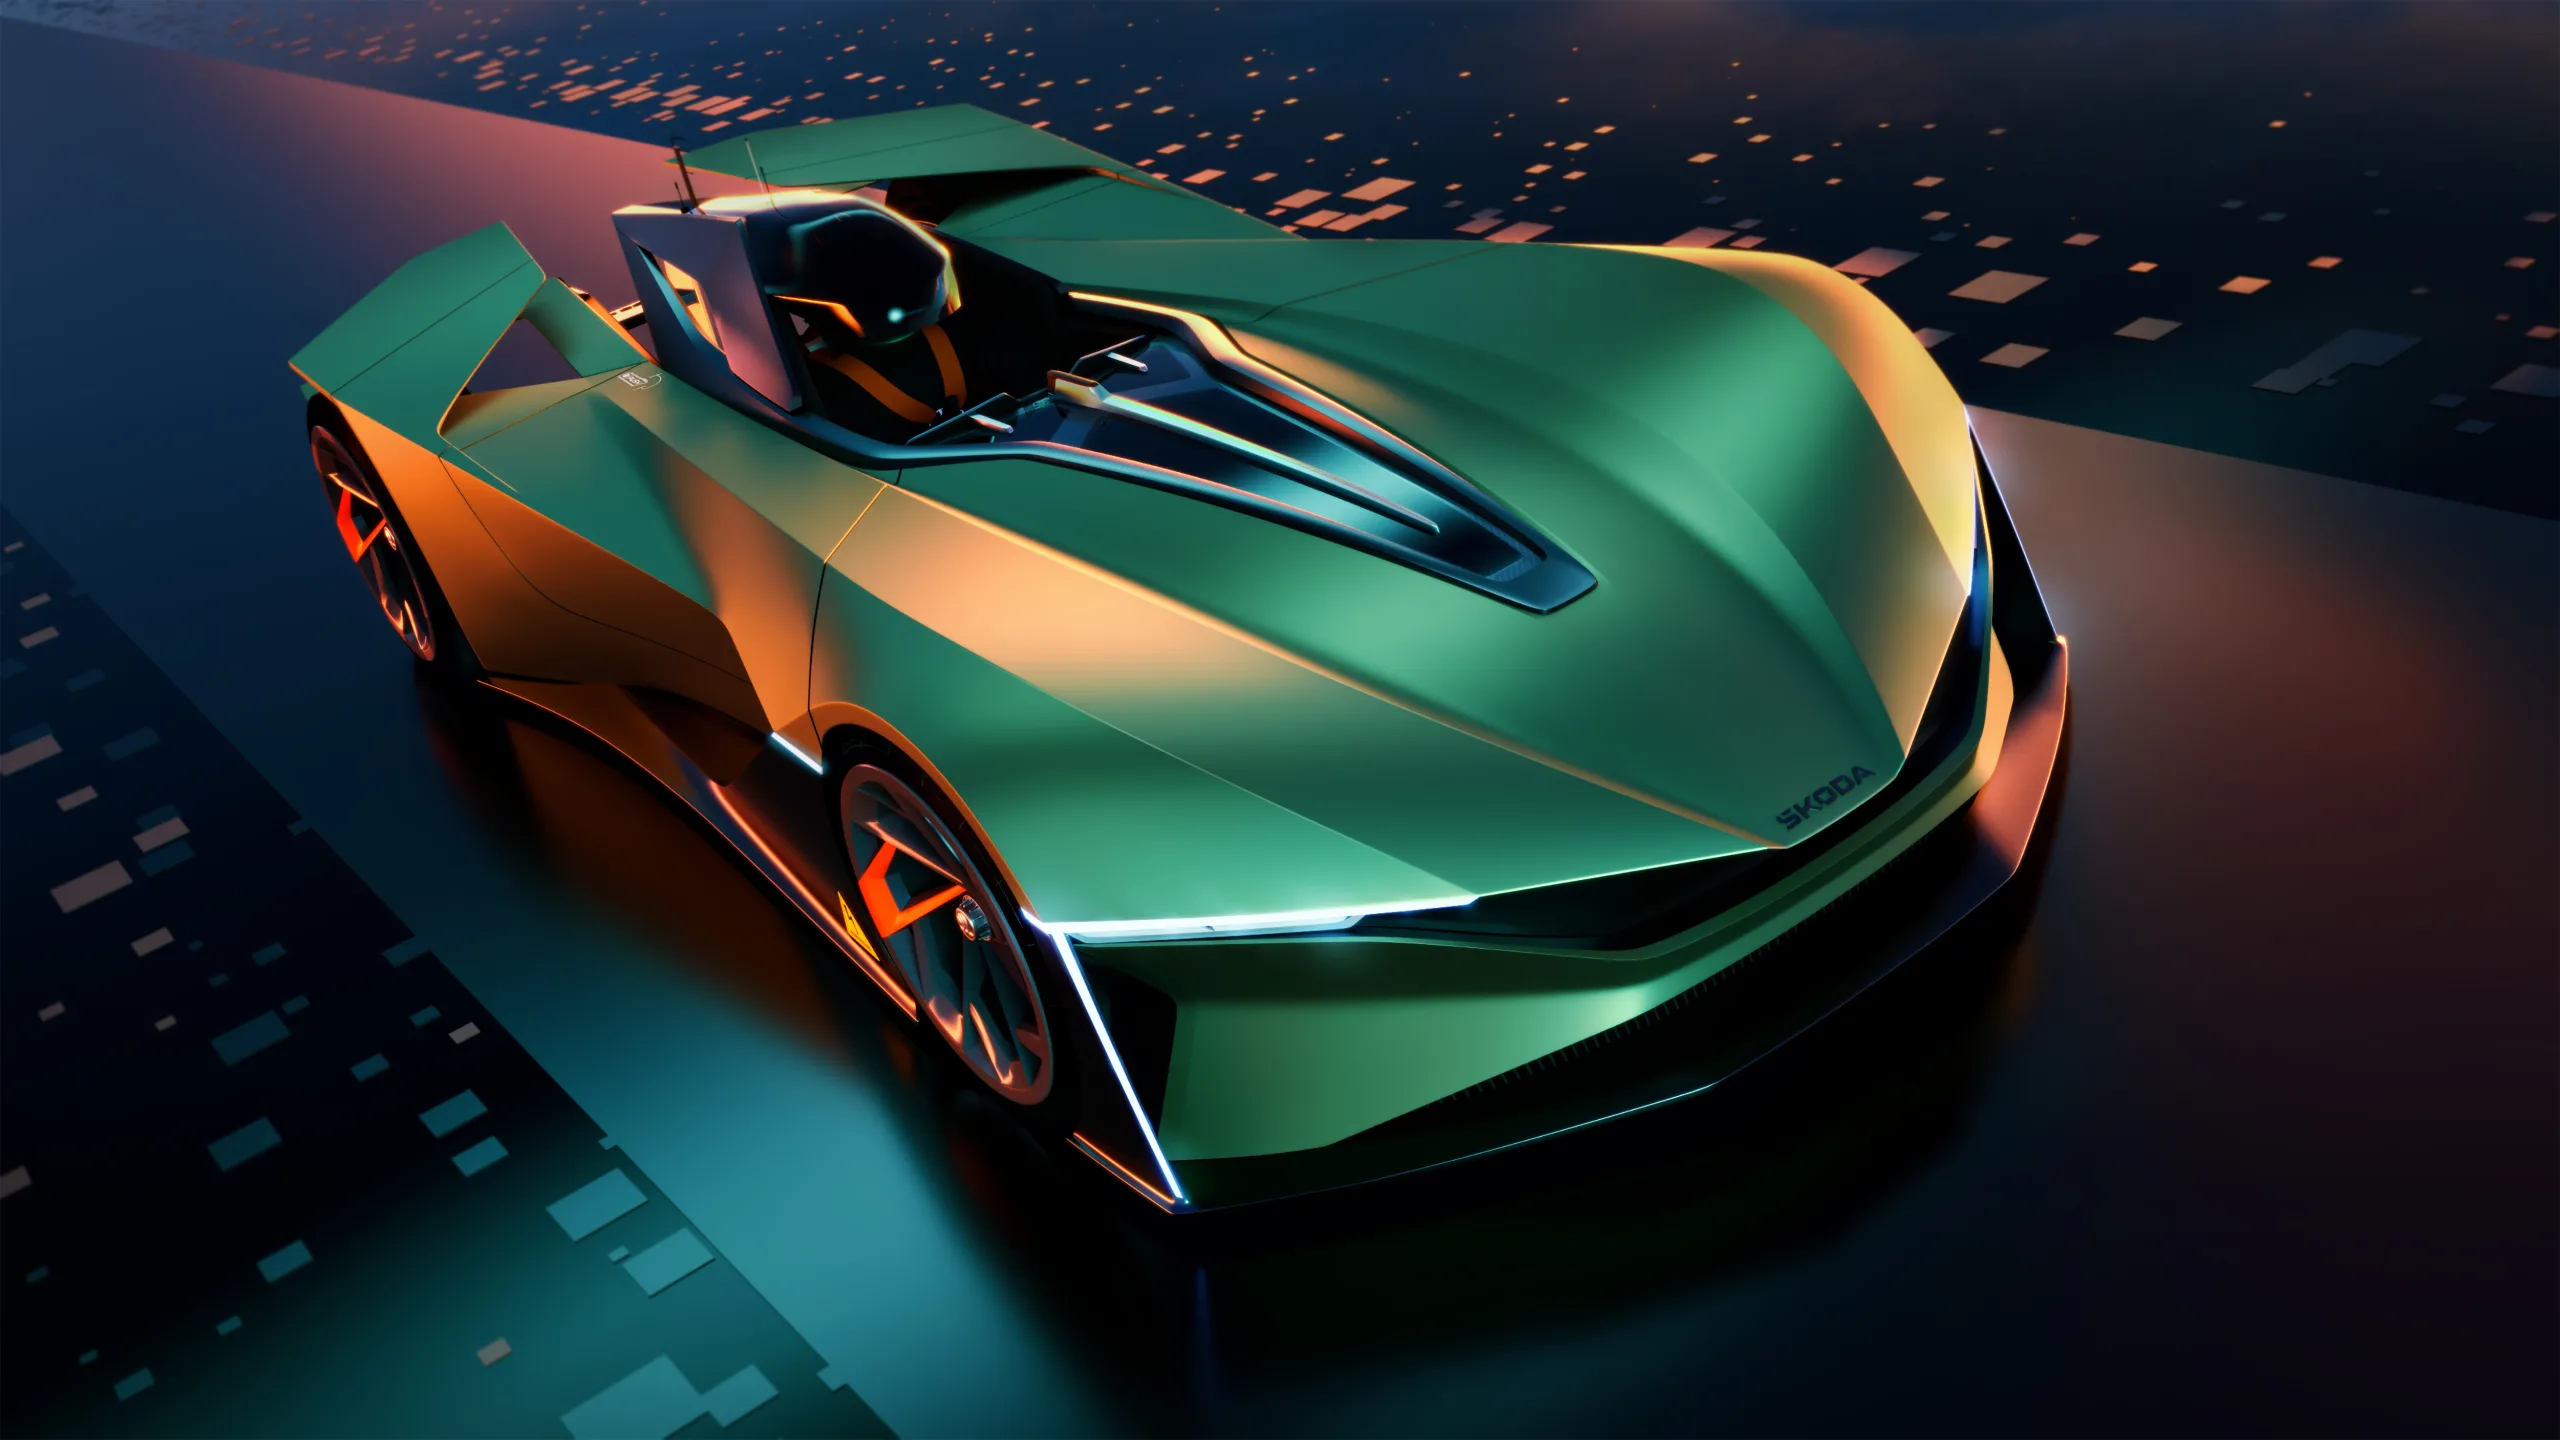 斯柯达进入 Gran Turismo 游戏。全新斯柯达Vision Gran Turismo设计理念出现在电脑游戏中